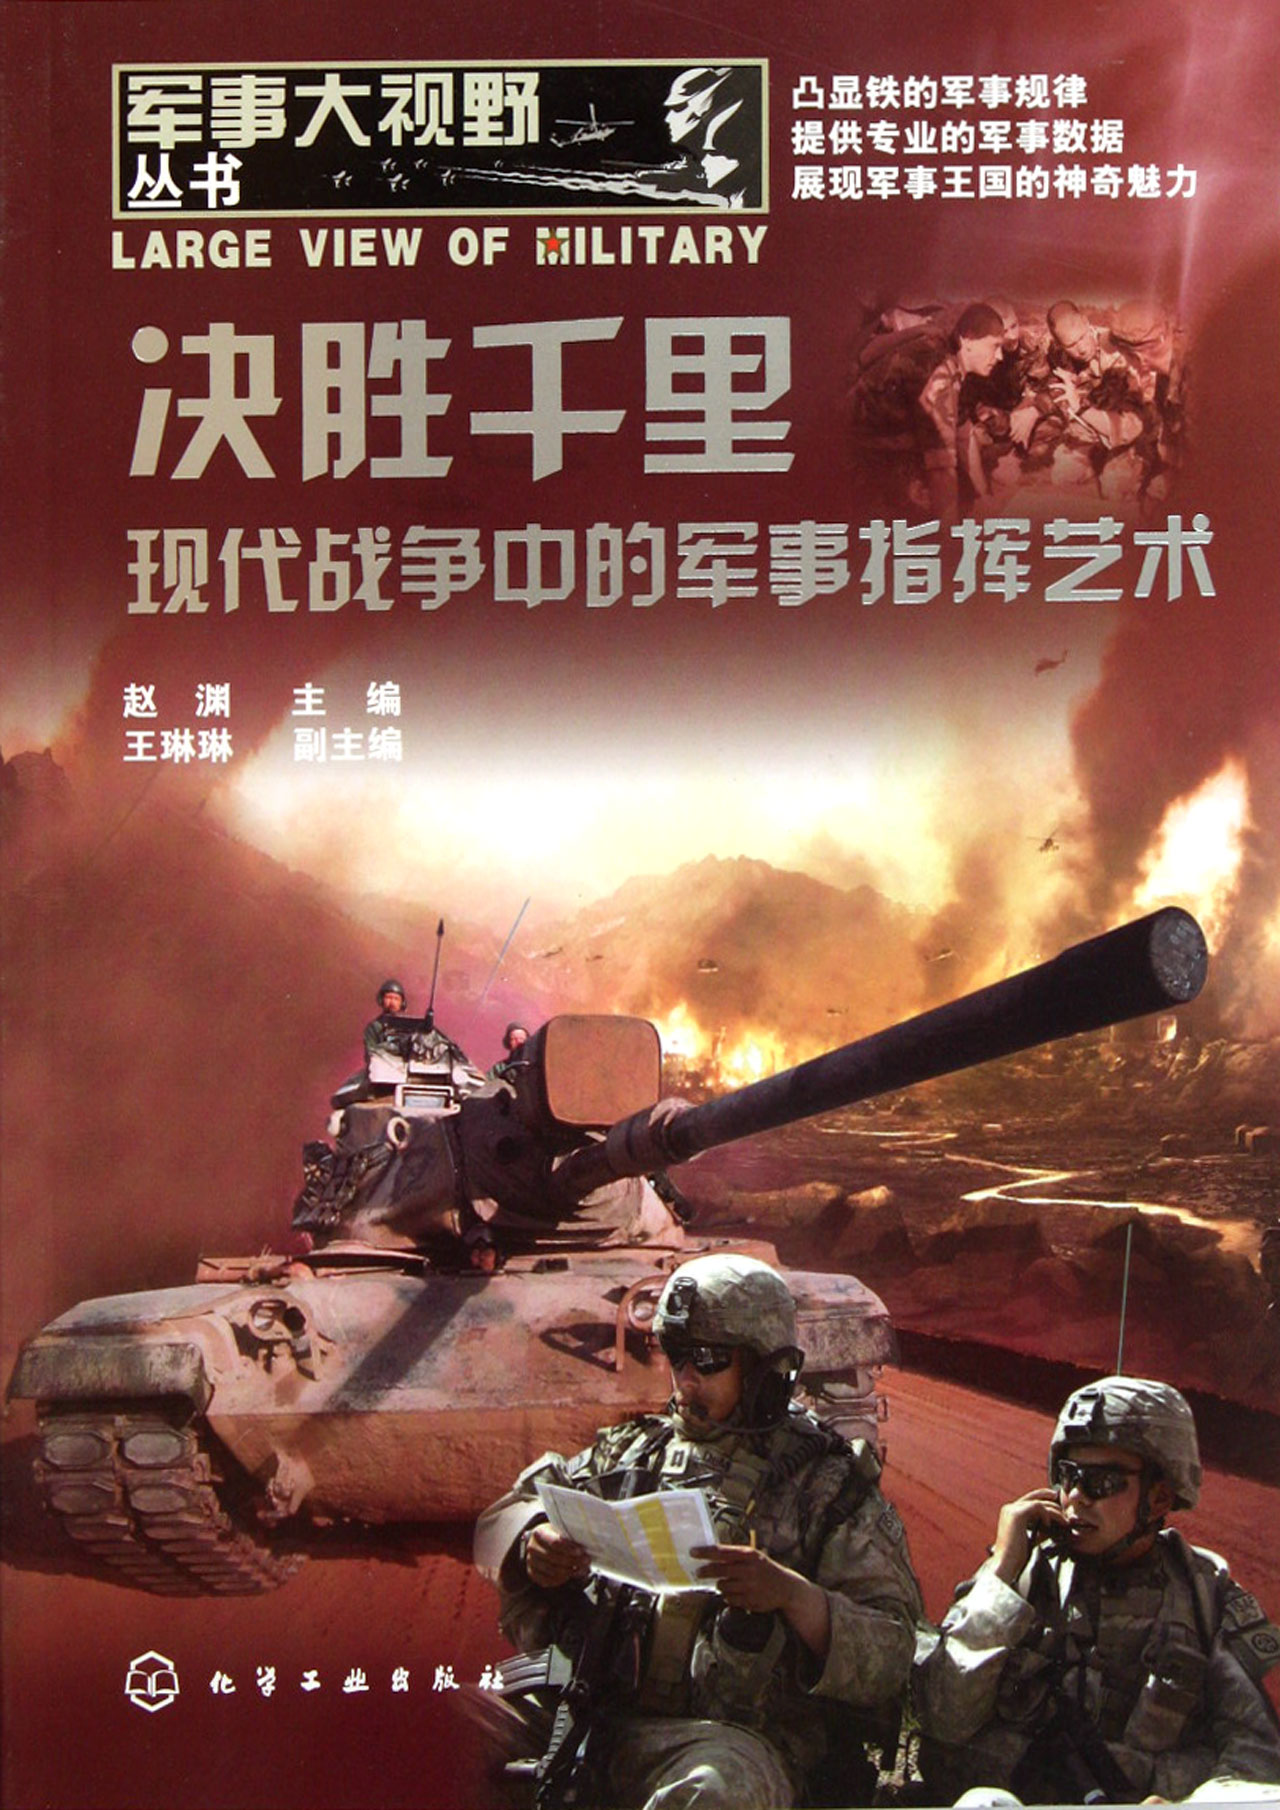 2008年中国国防白皮书：这一方针着力提高军队应对多种安全威胁